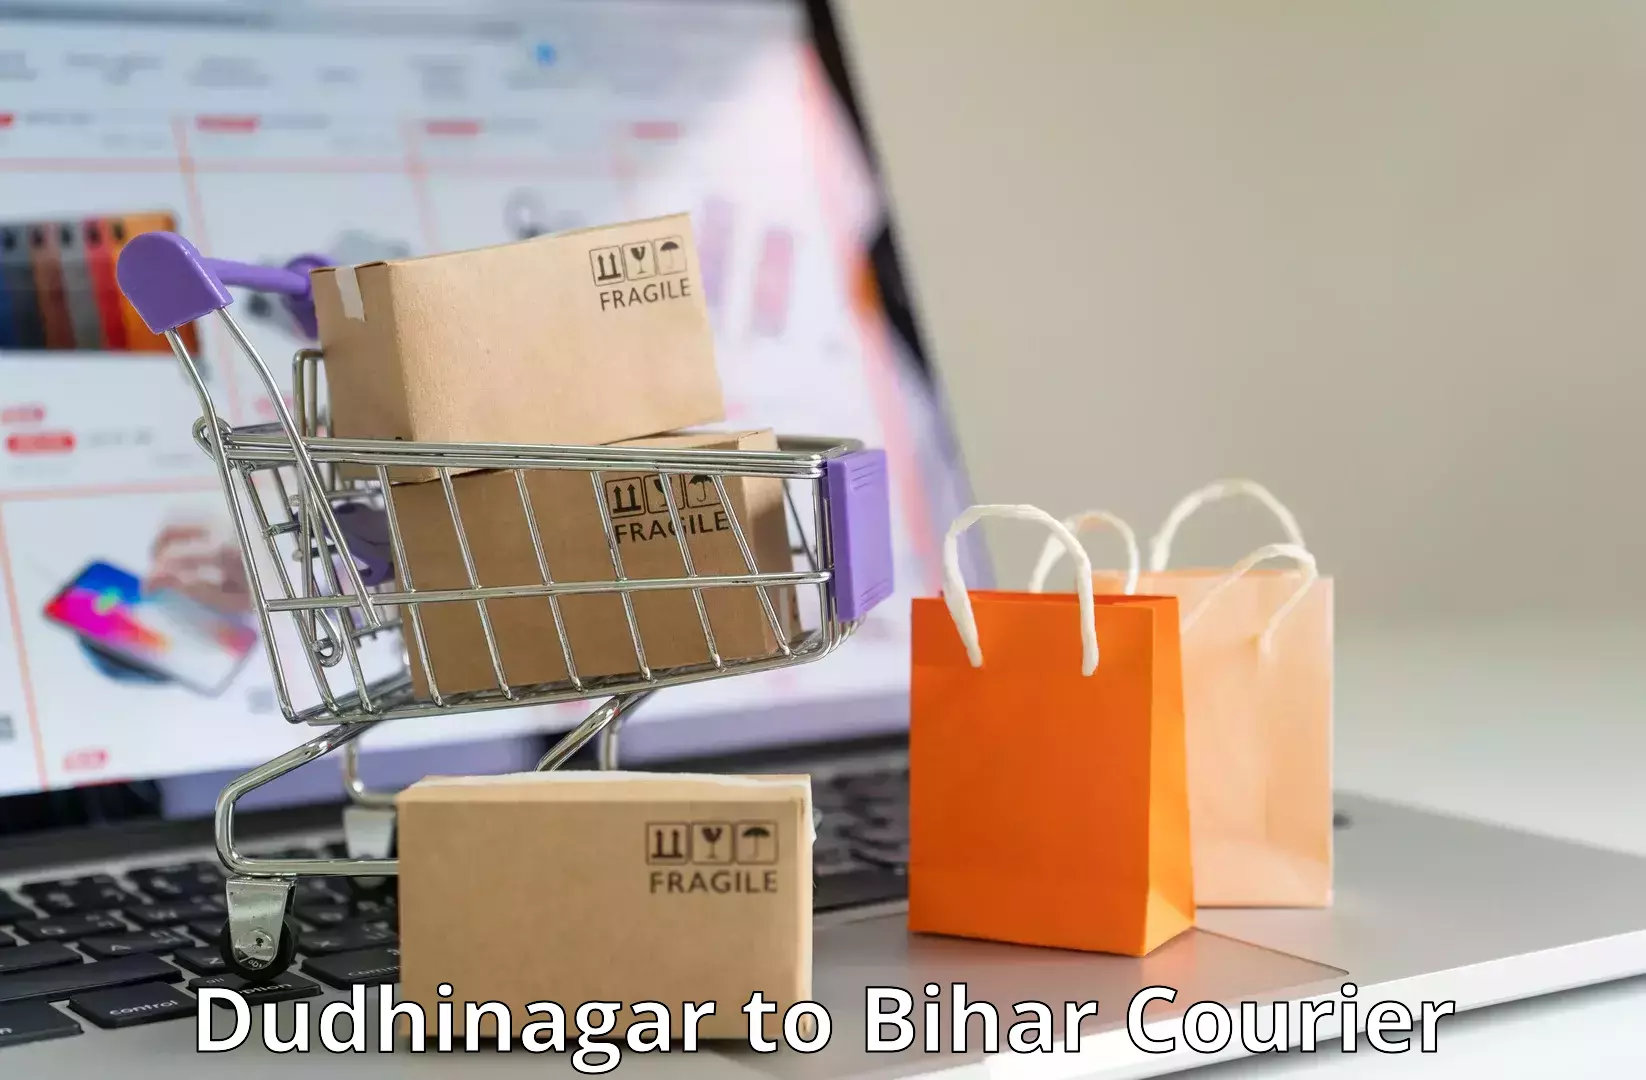 Courier app Dudhinagar to Narpatganj